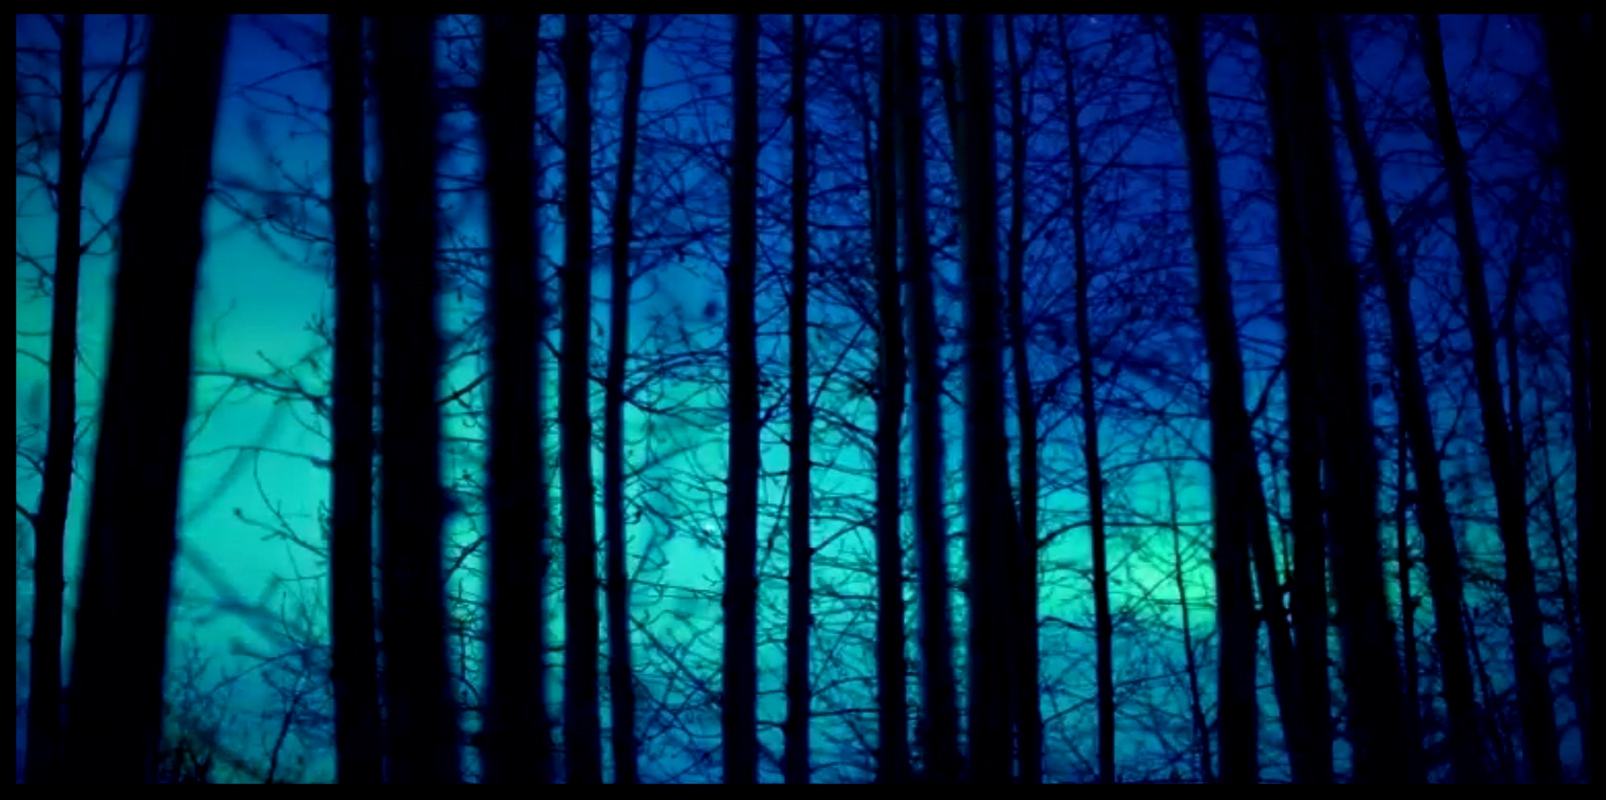 Bäume in Blau